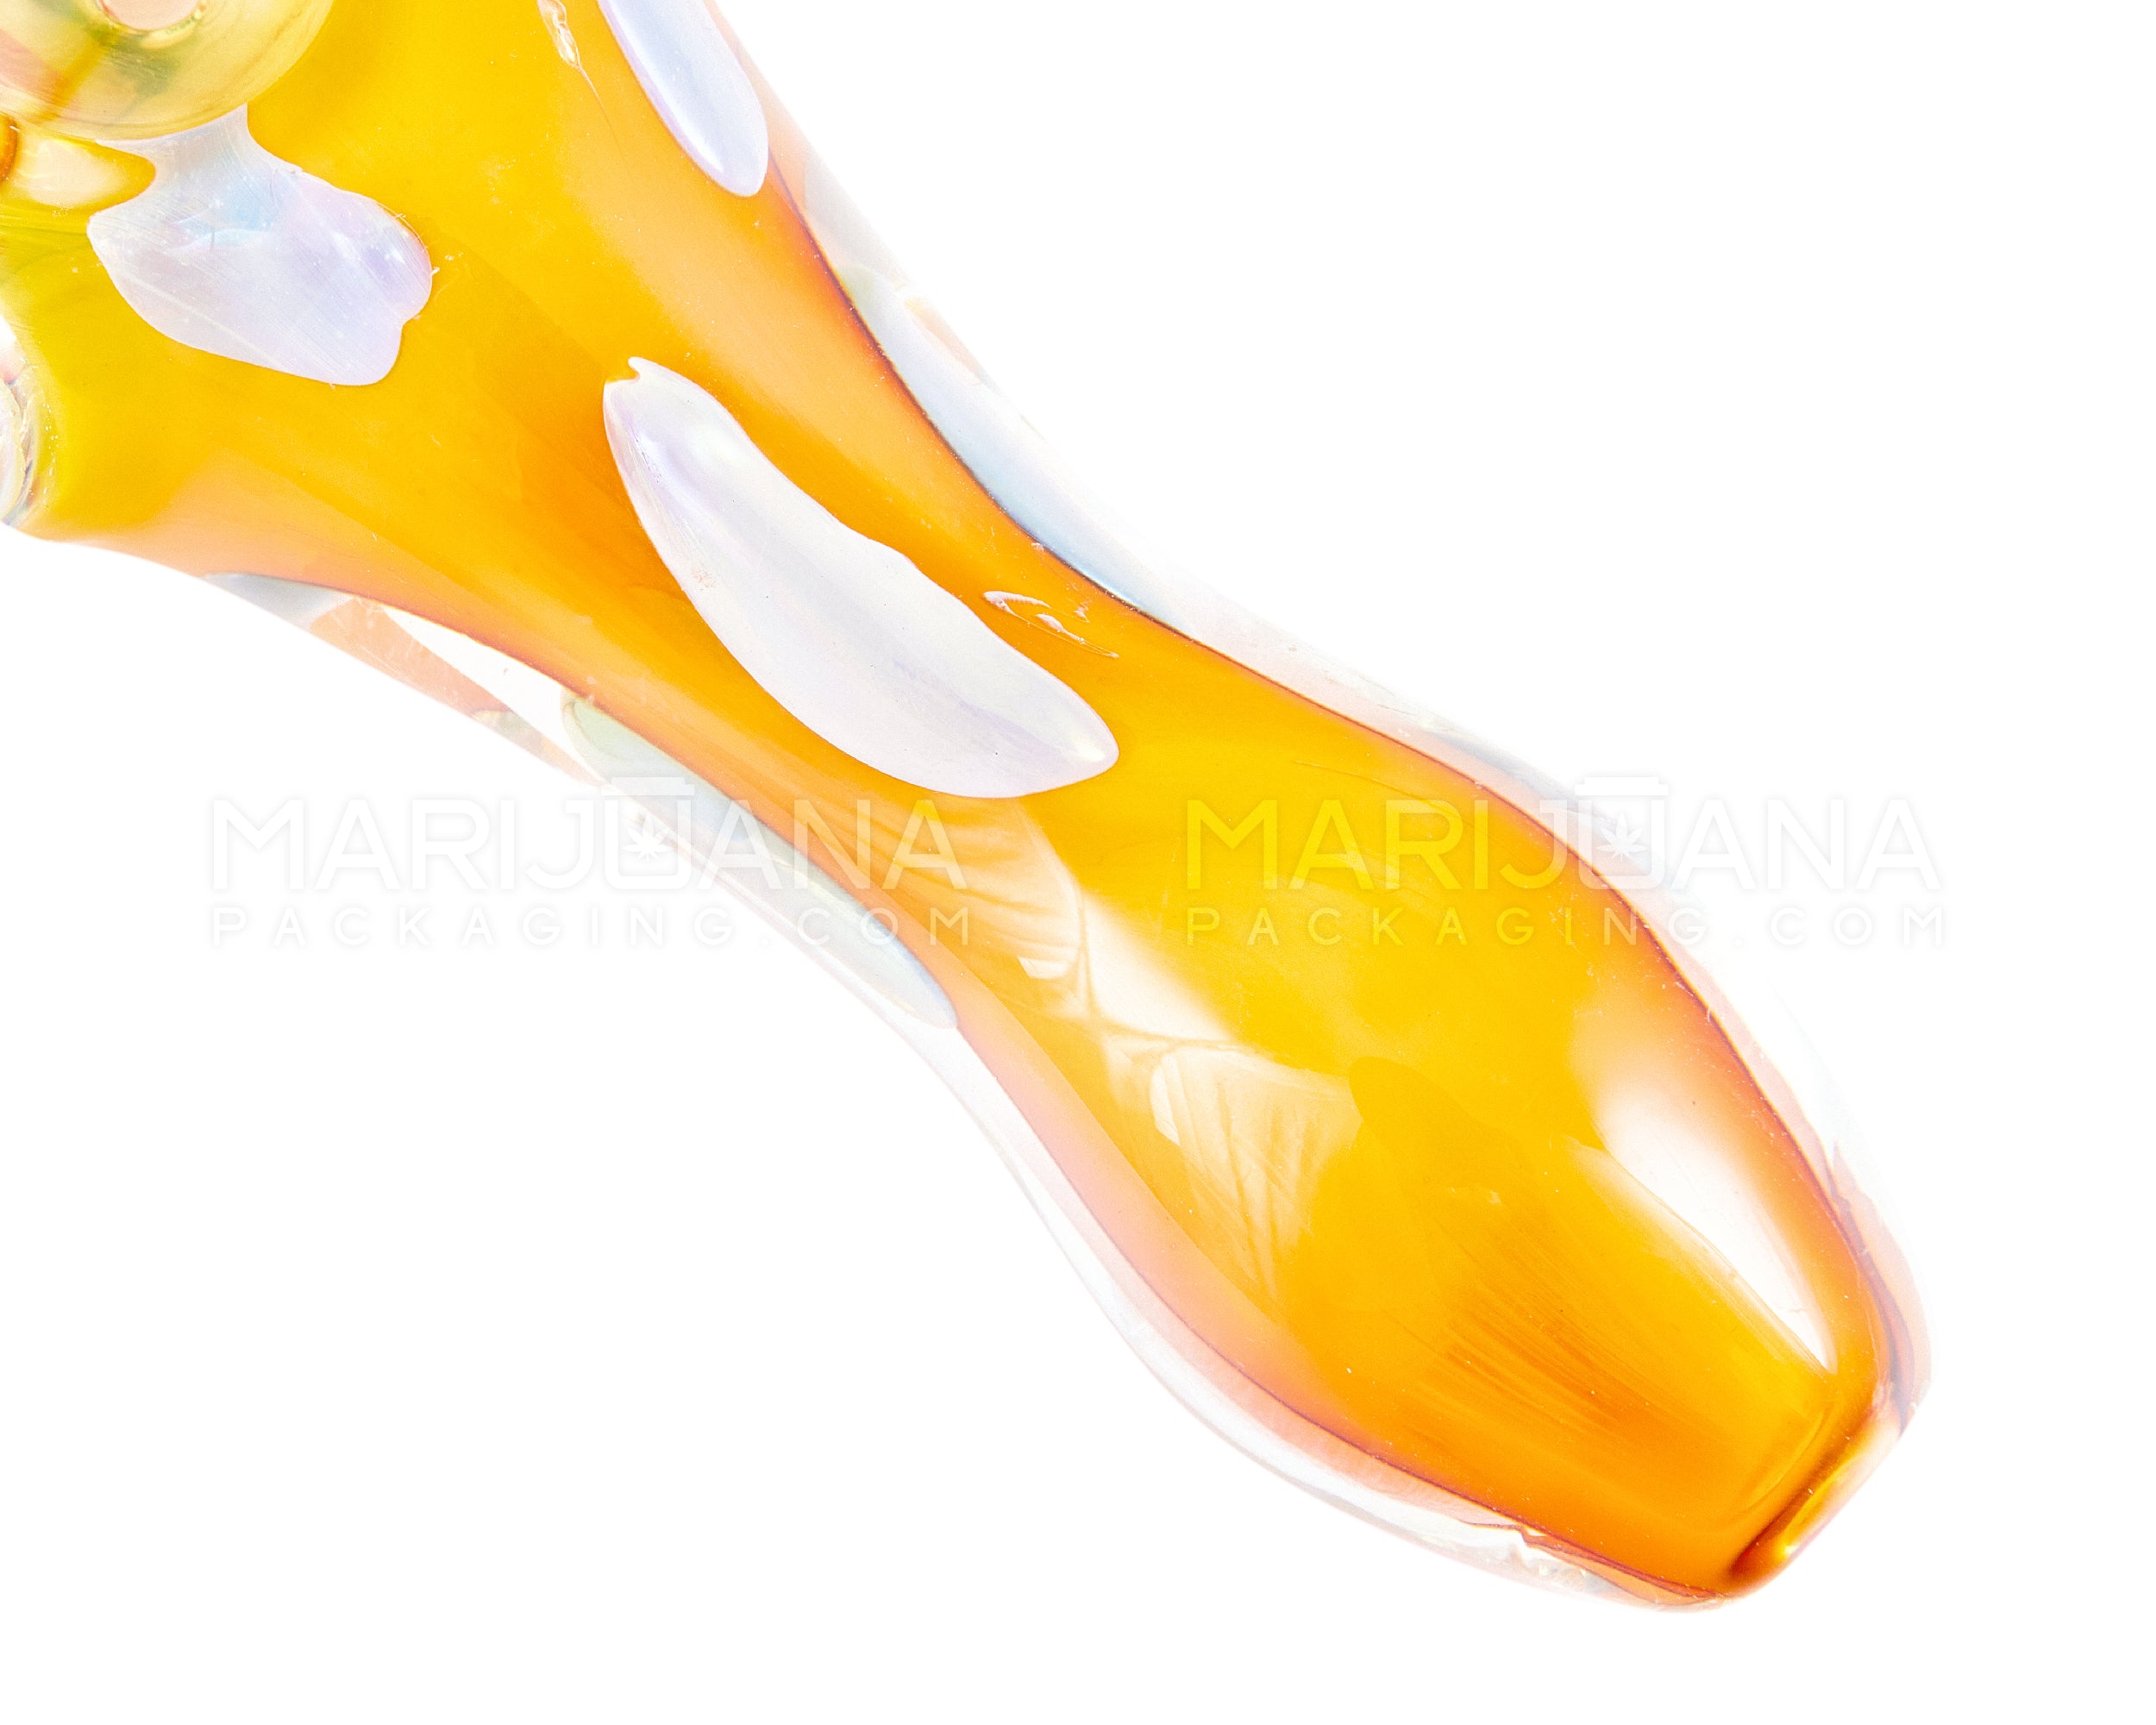 Swirl & Fumed Spoon Hand Pipe w/ Speckles & Knocker | 5in Long - Glass - Assorted - 3